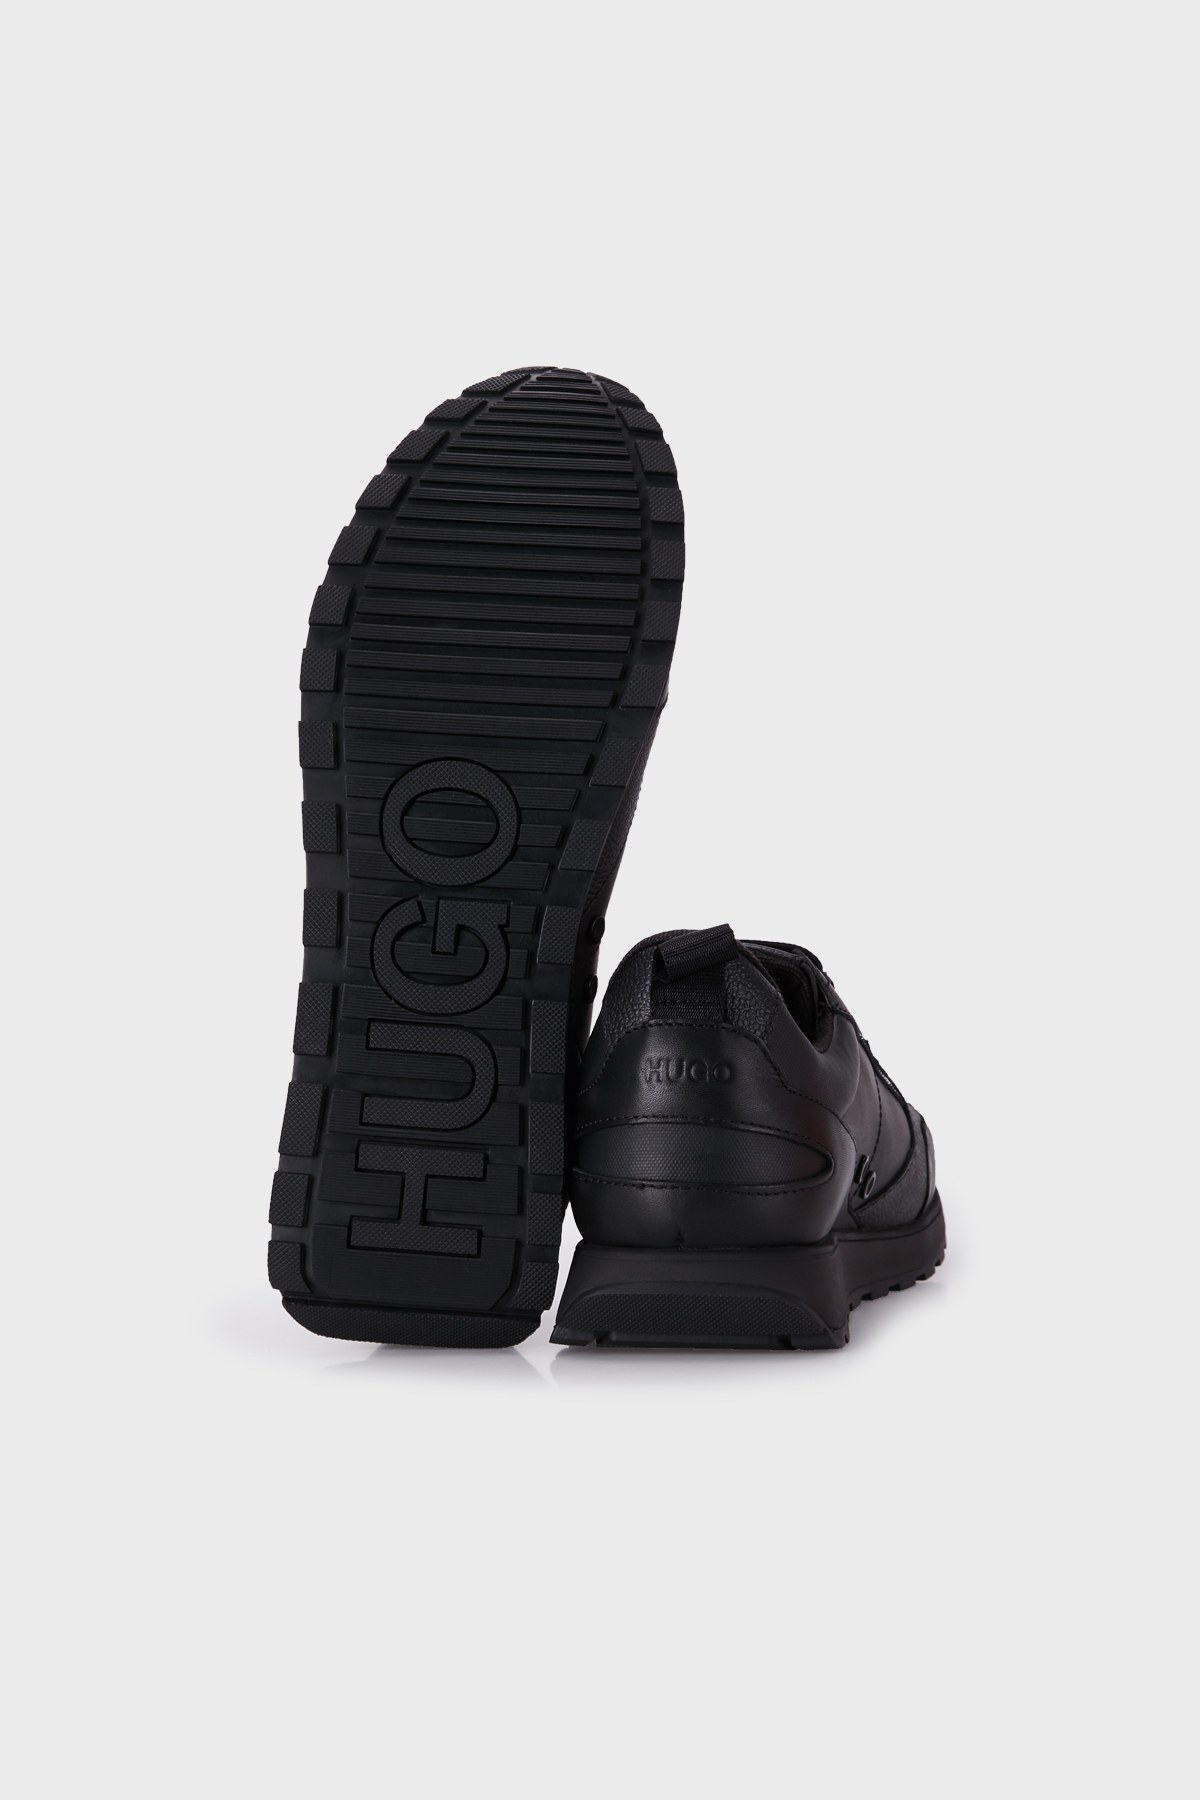 Hugo Boss Deri Erkek Ayakkabı 50459318 001 SİYAH